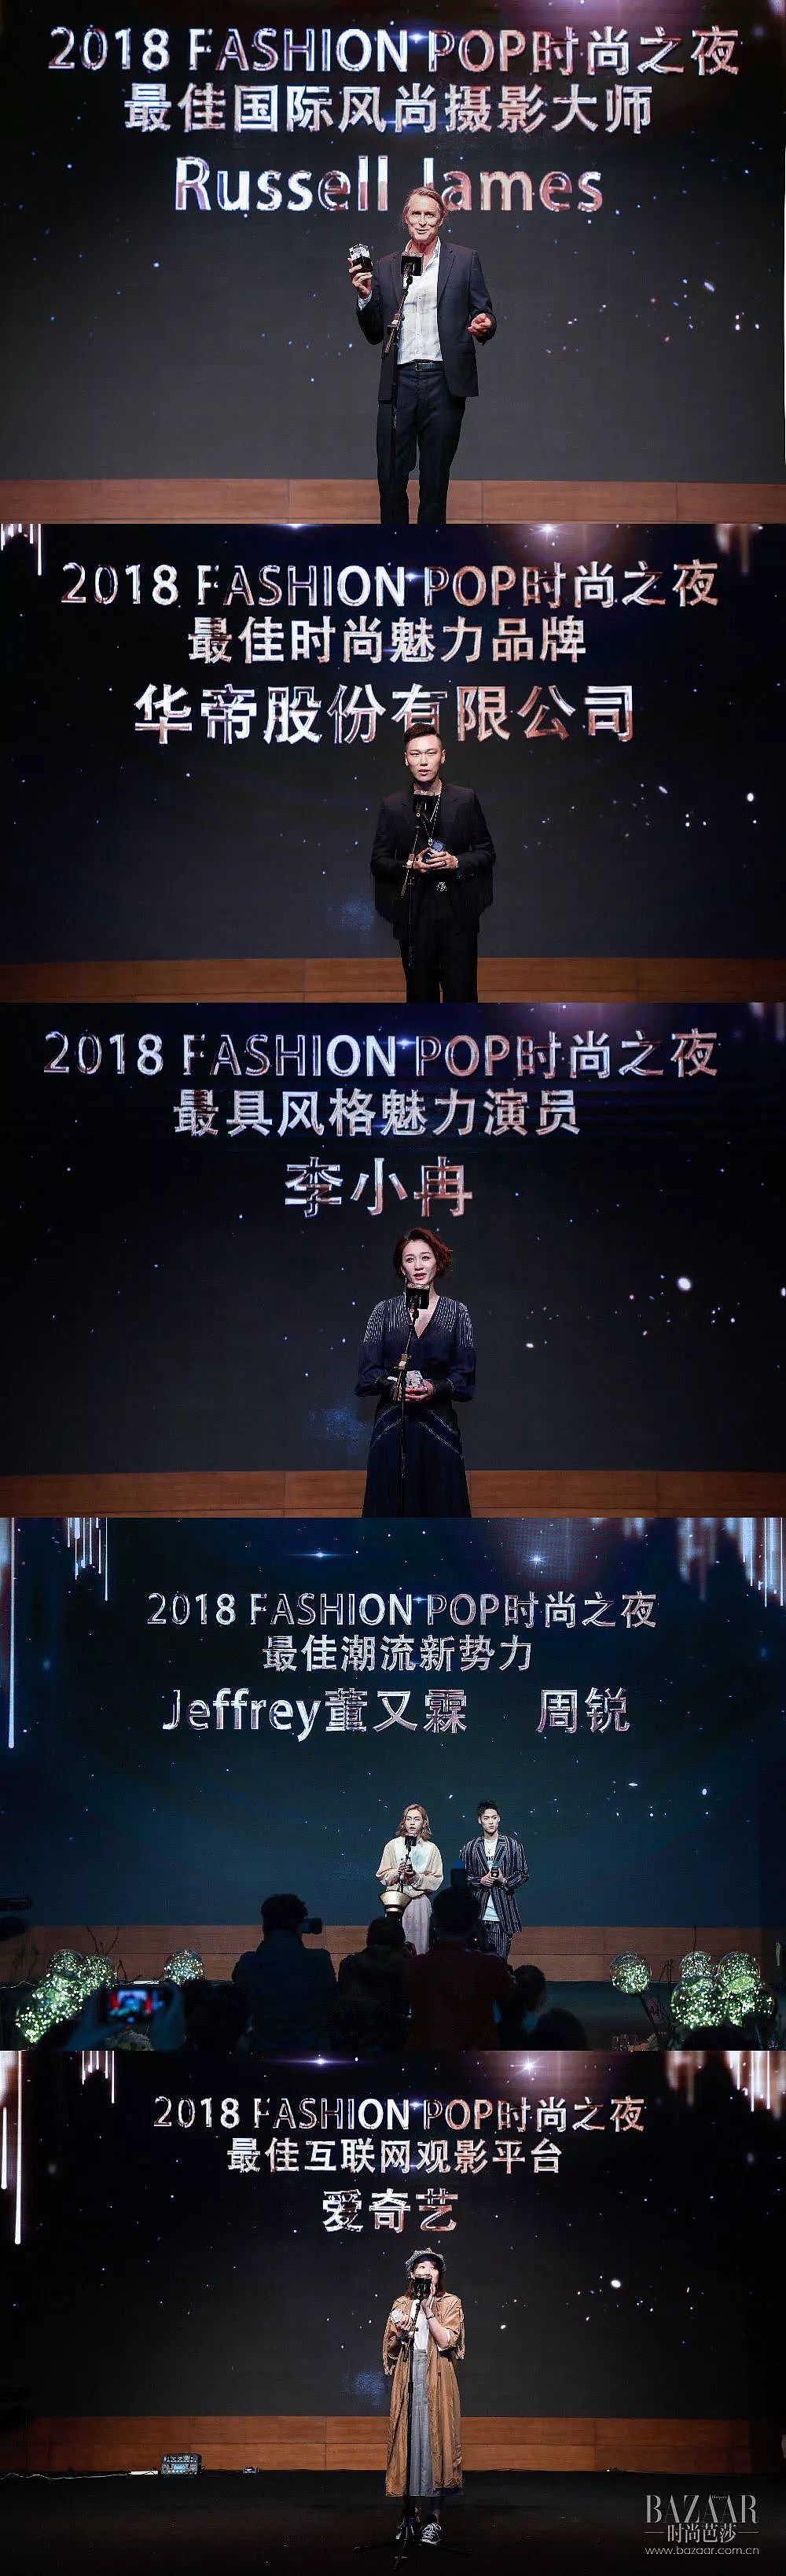 星光点亮2018 Fashion Pop时尚之夜 - 24